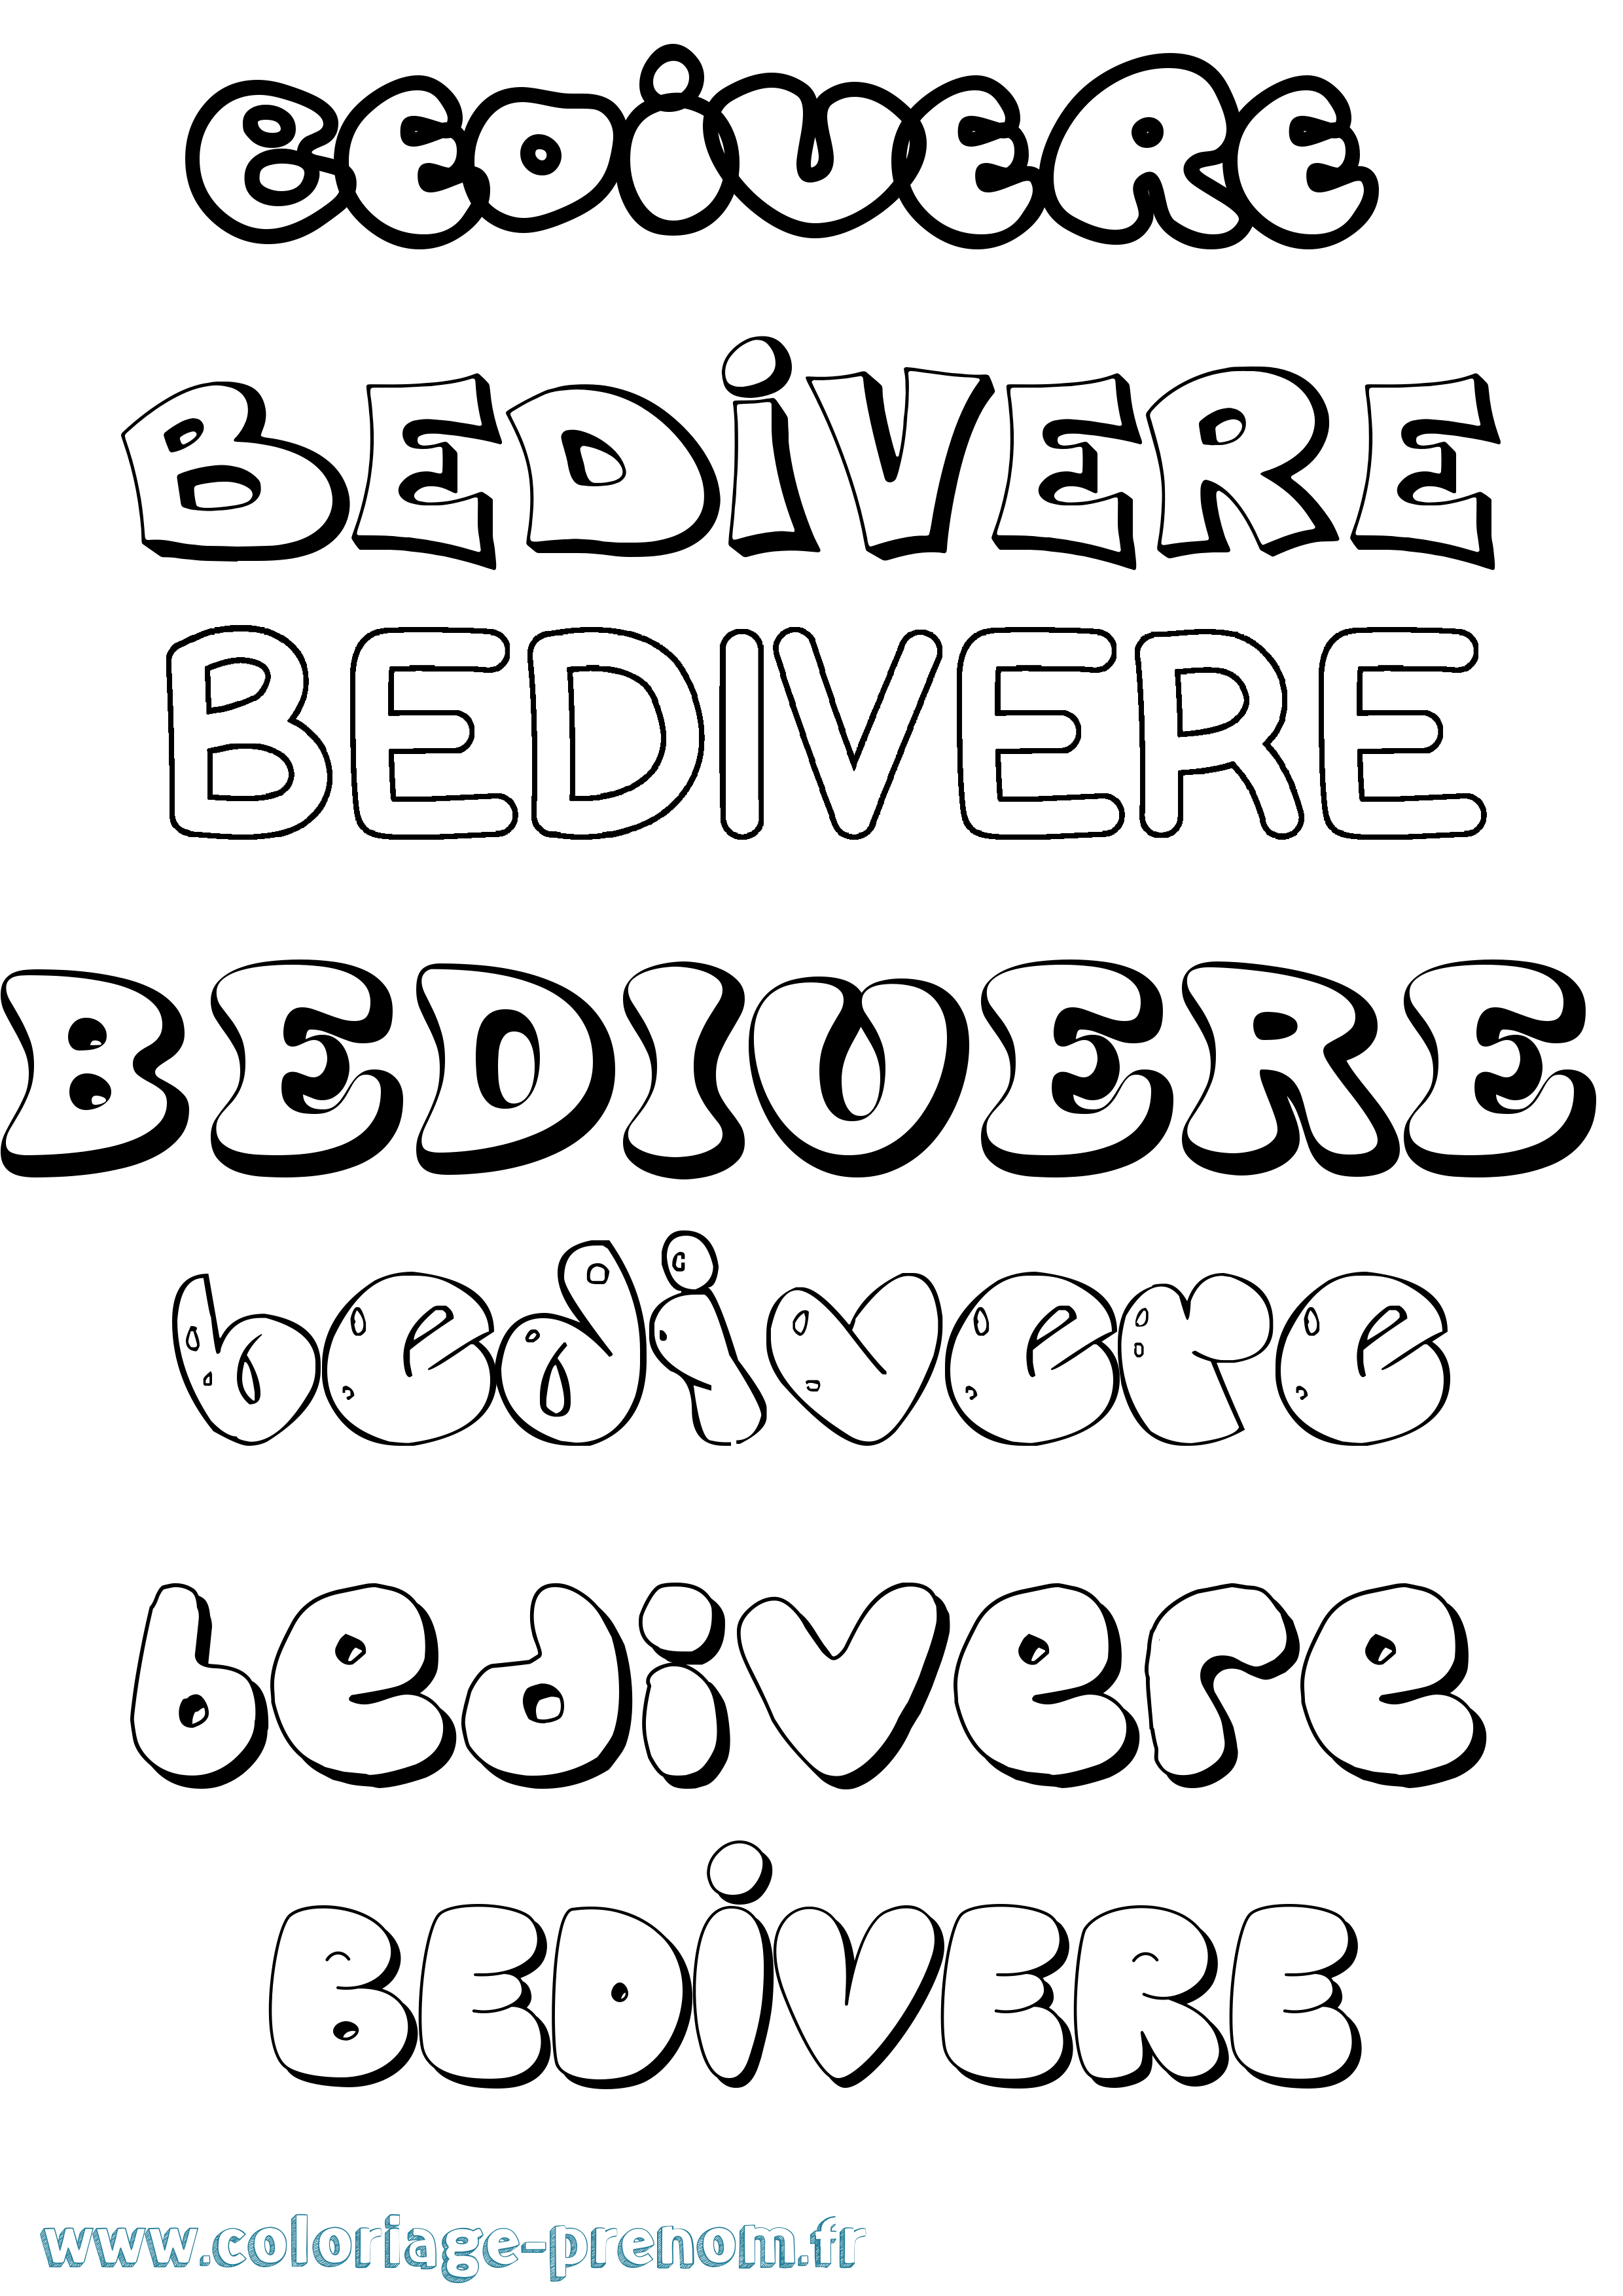 Coloriage prénom Bedivere Bubble